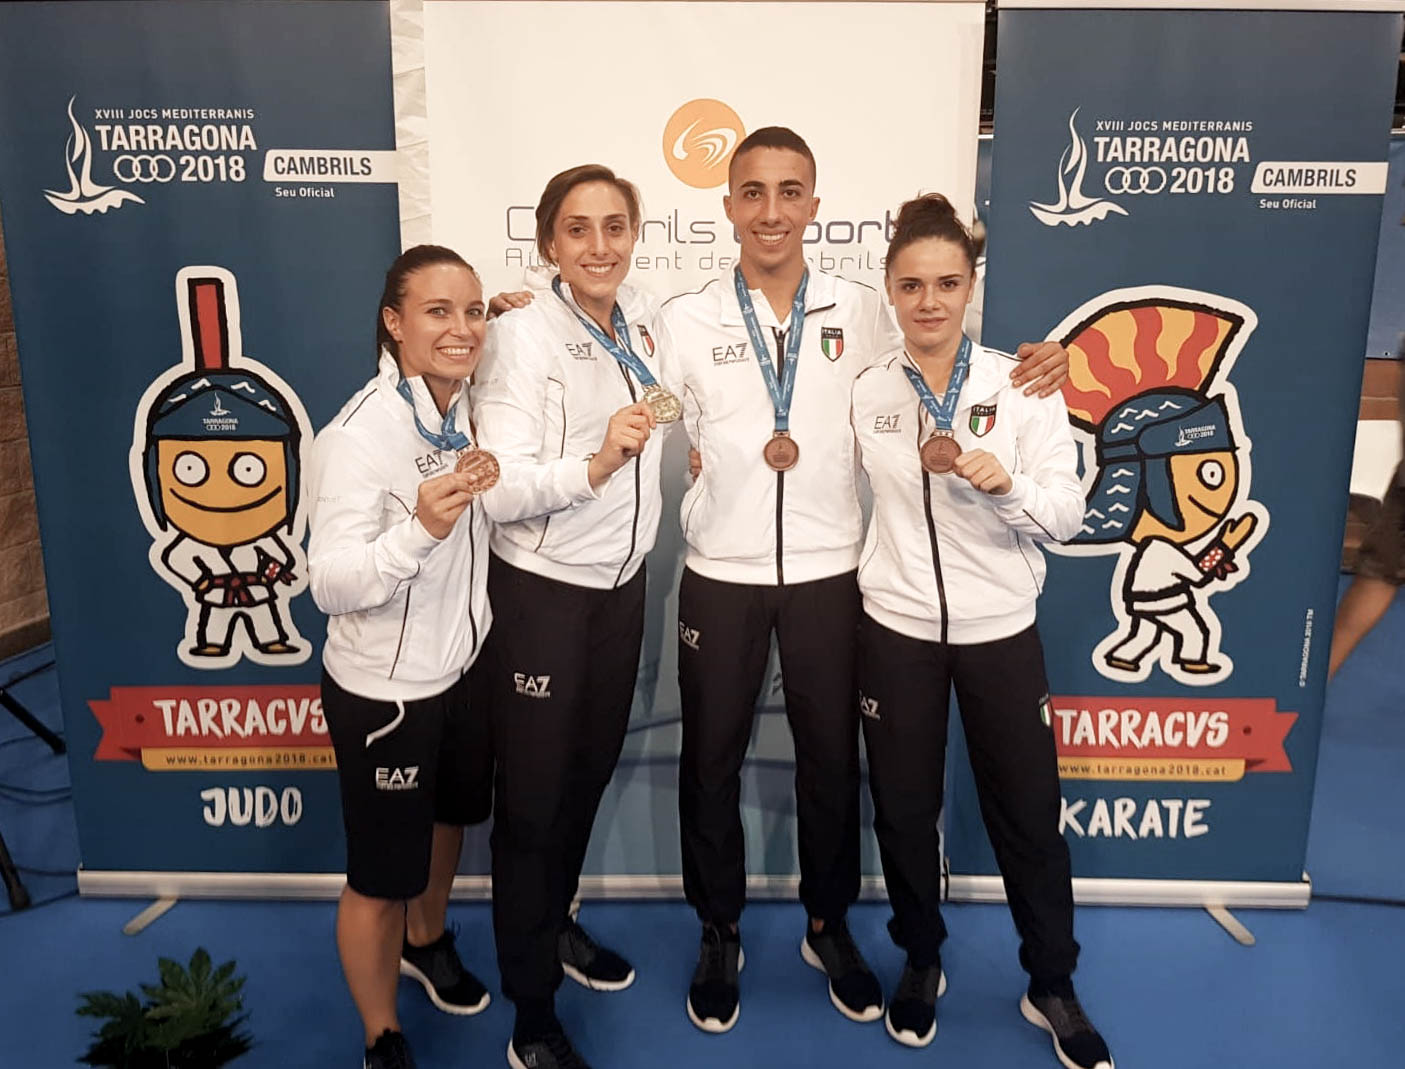 Tarragona 2018 Live:  Silvia Semeraro vince l'oro nella categoria -68kg! Cardin, Lallo e Rabii conquistano il bronzo.